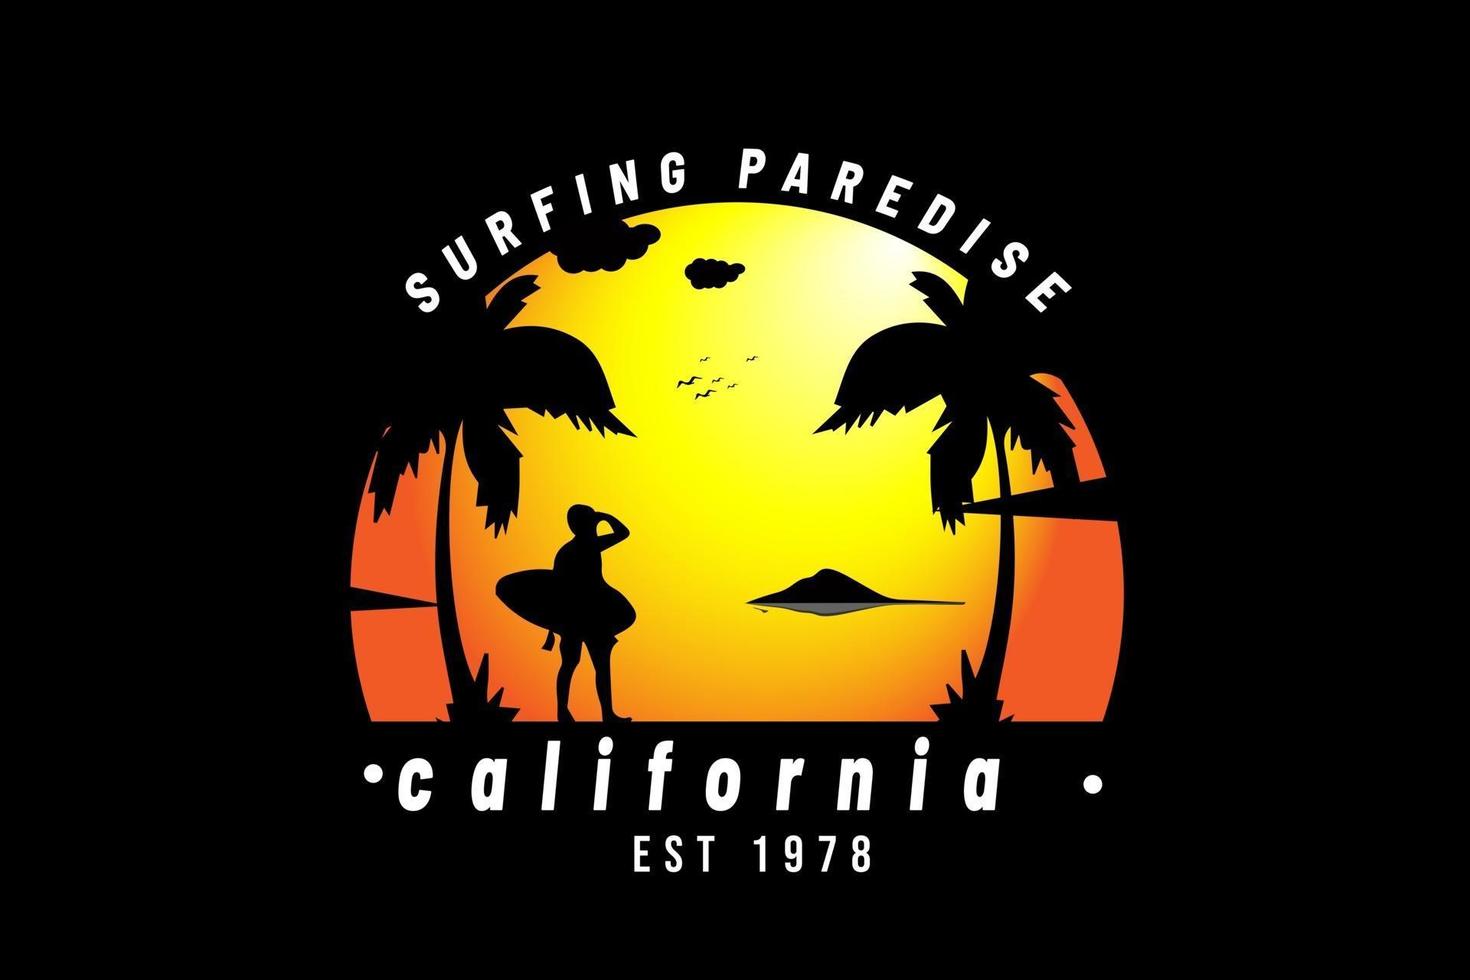 paradis du surf californie est 1978 couleur orange et noir vecteur